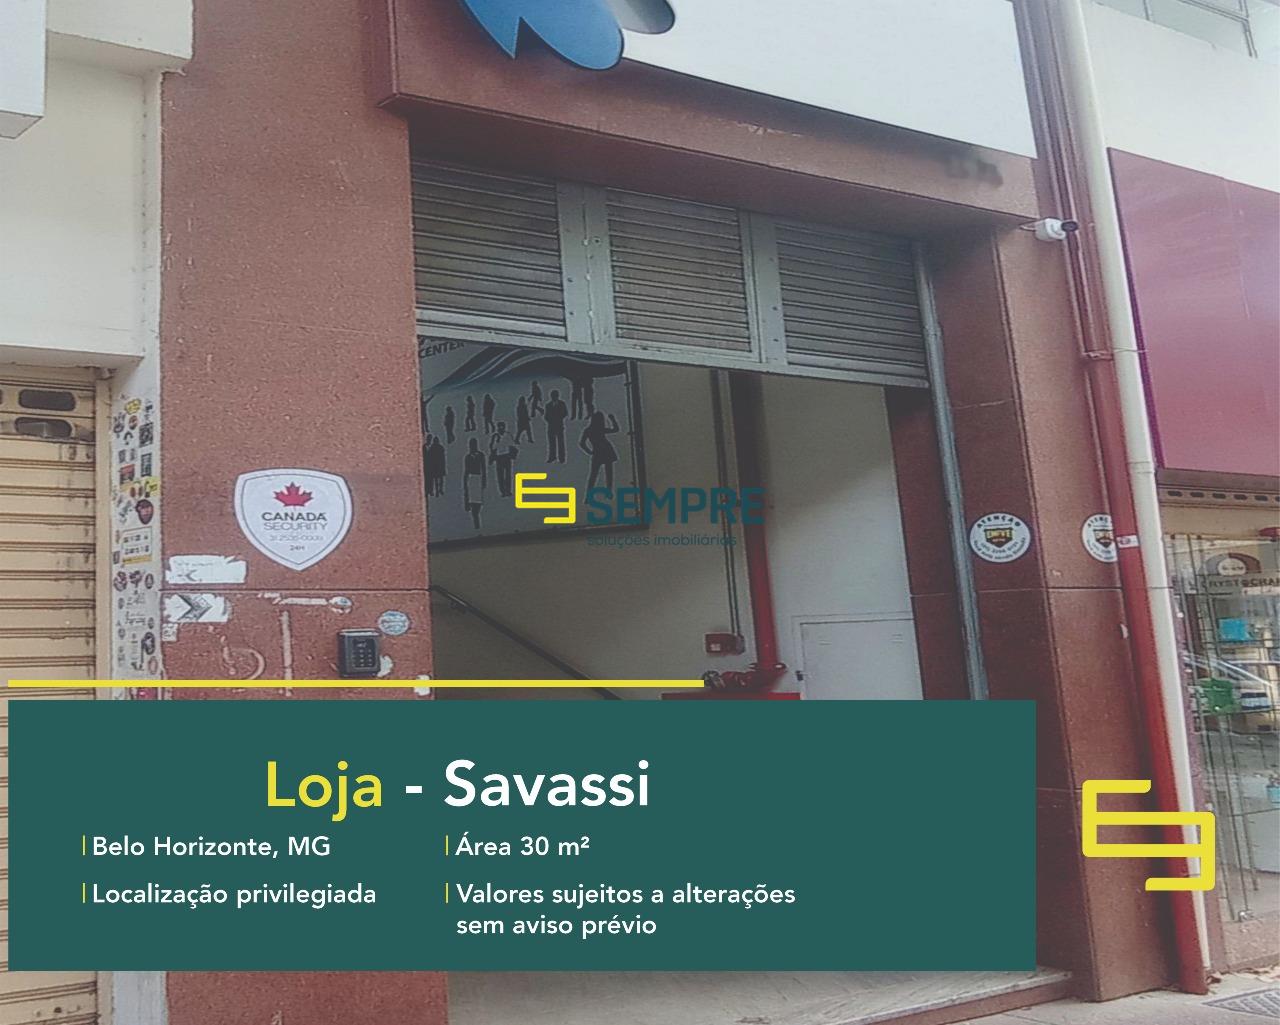 Loja para vender no bairro Savassi em Belo Horizonte, excelente localização. O estabelecimento comercial conta, sobretudo, com área de 30 m².